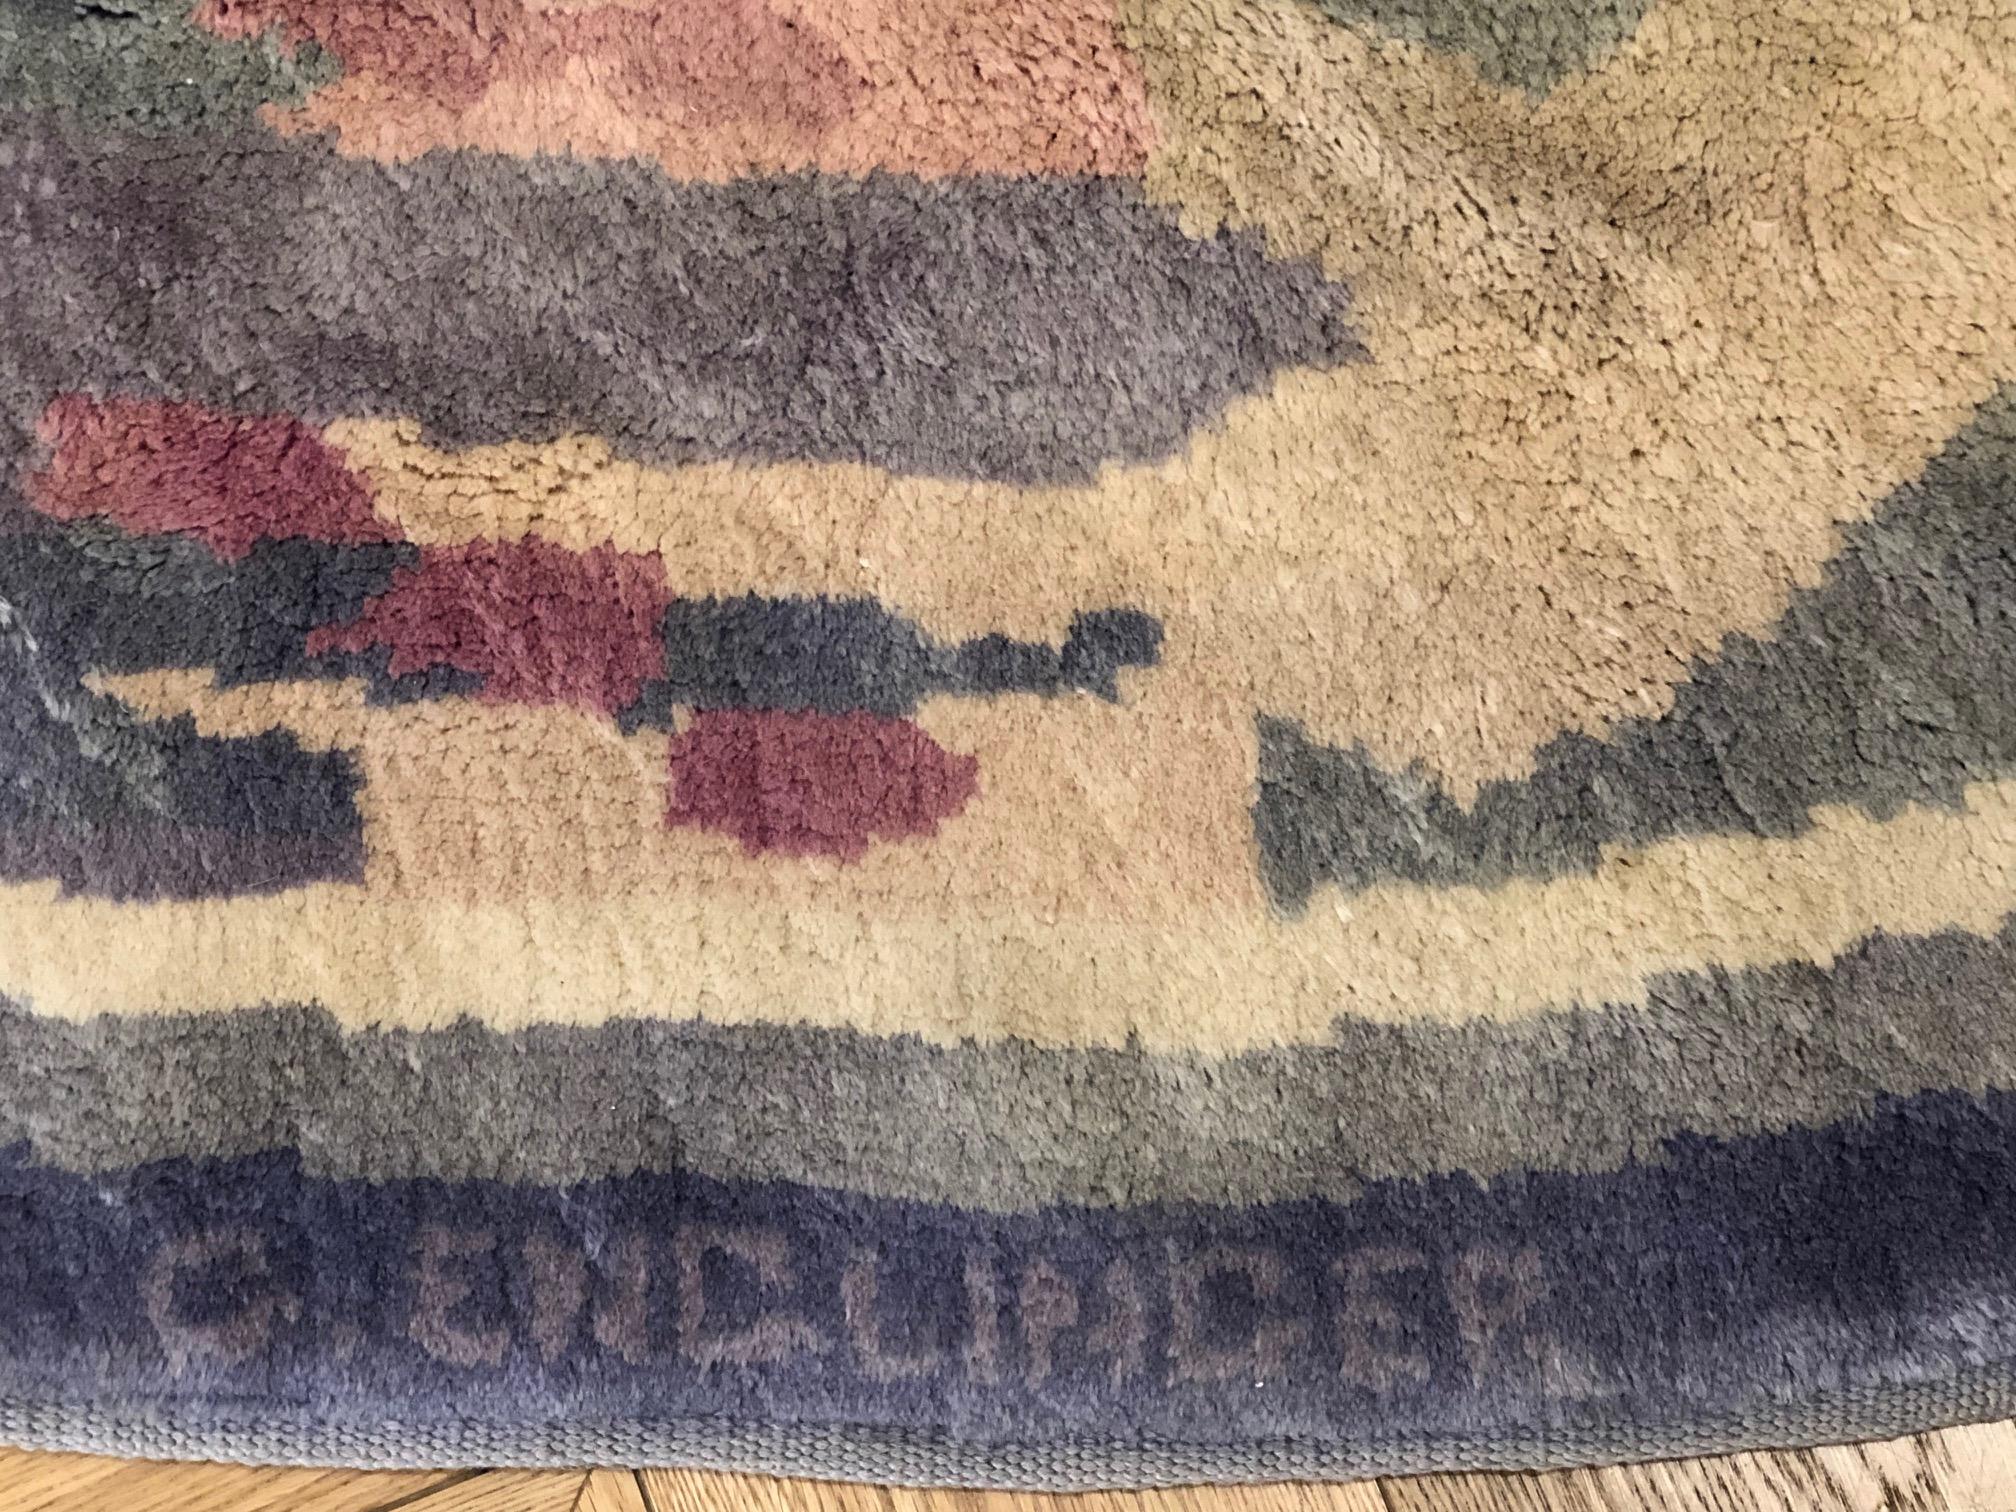 Savonerie-Teppich des Designers Gabriel Englinger (1898-1983), repräsentativ für das Modell des ästhetischen Geschmacks, das sich in Europa und den Vereinigten Staaten zwischen den 